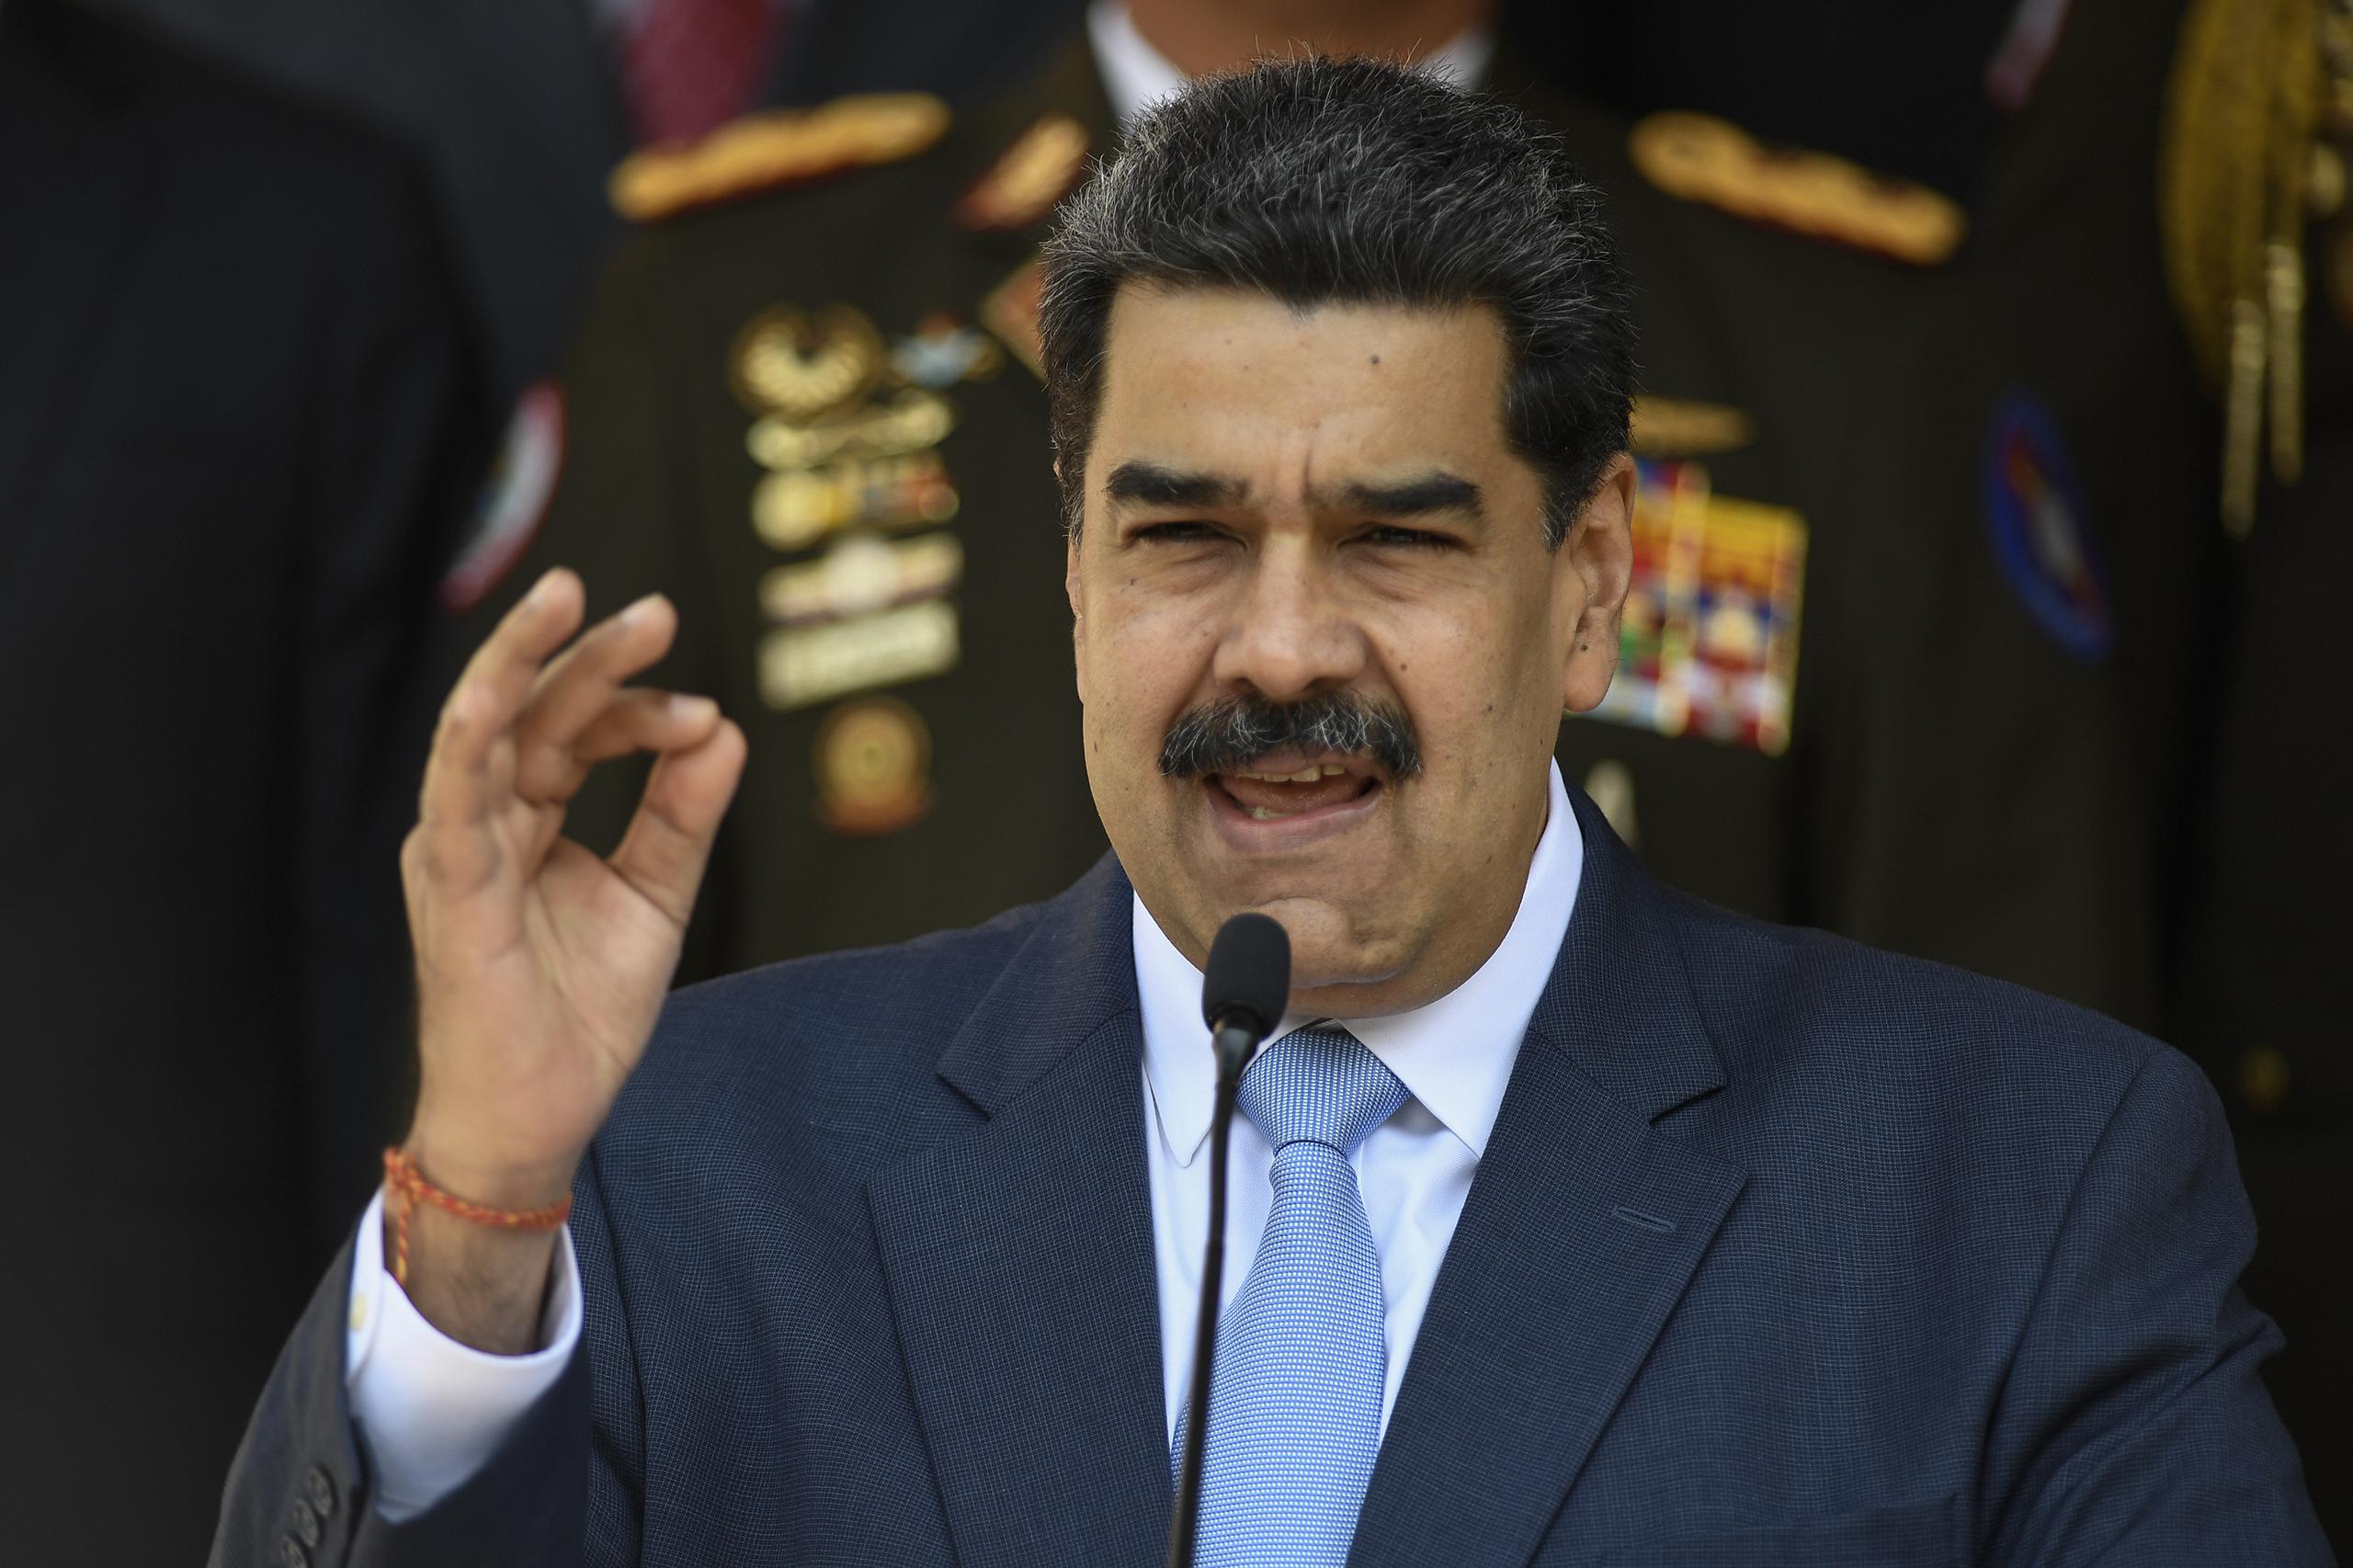 “Esta sería la última semana de cuarentena” del 2020, entre el 23 y 29 de noviembre, dijo Maduro en un acto de gobierno televisado.